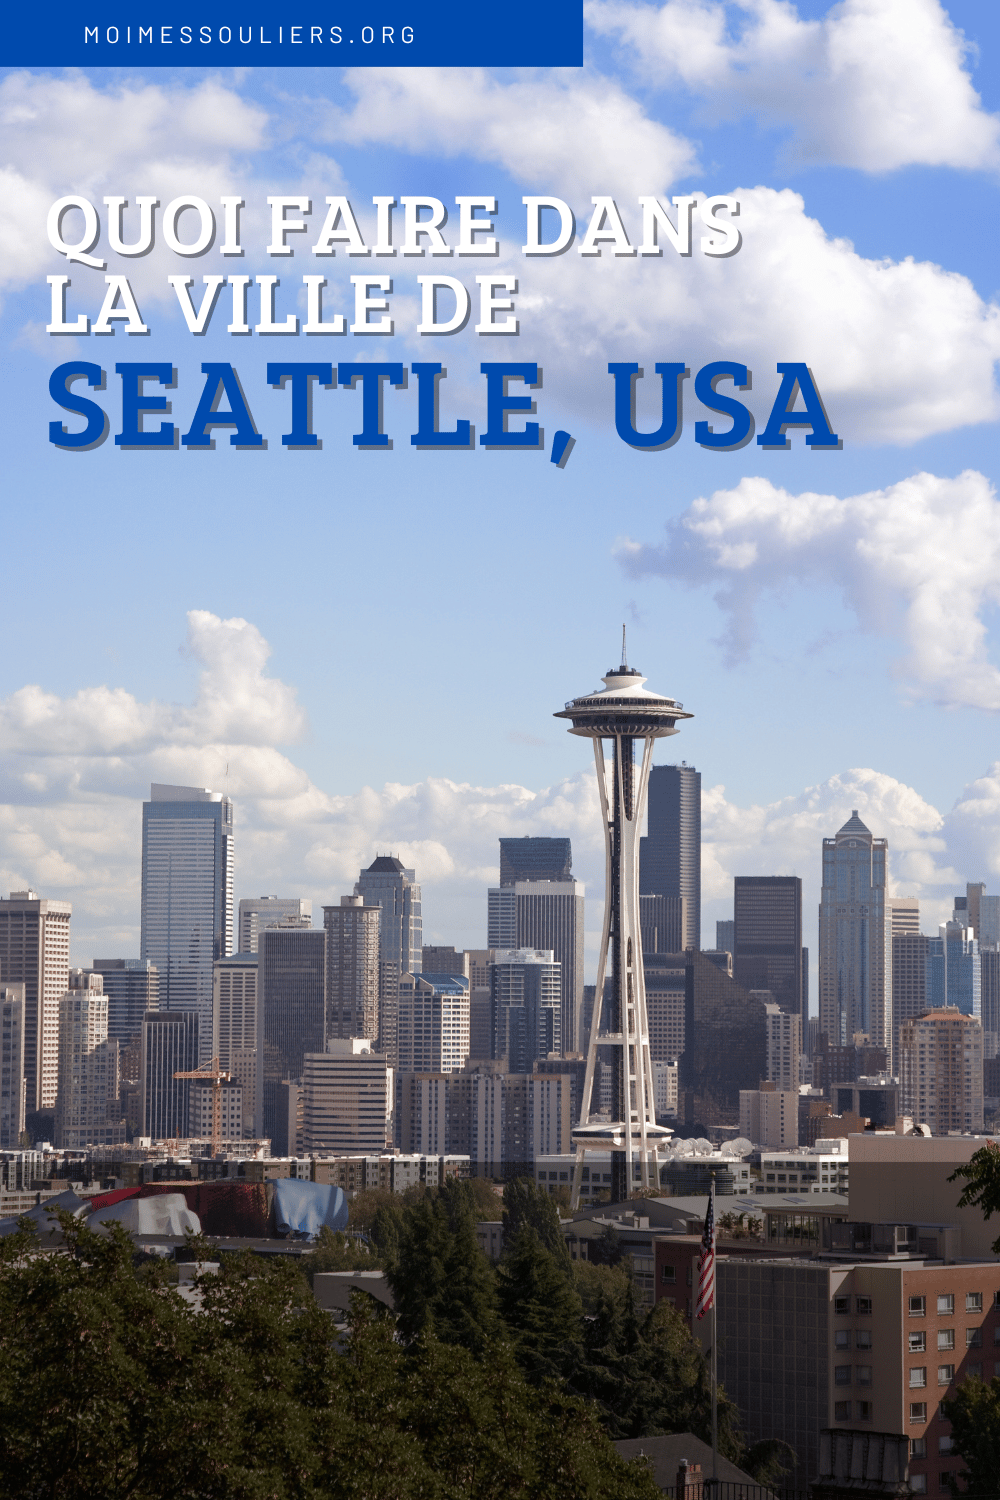 Quoi faire dans la ville de Seattle, USA?